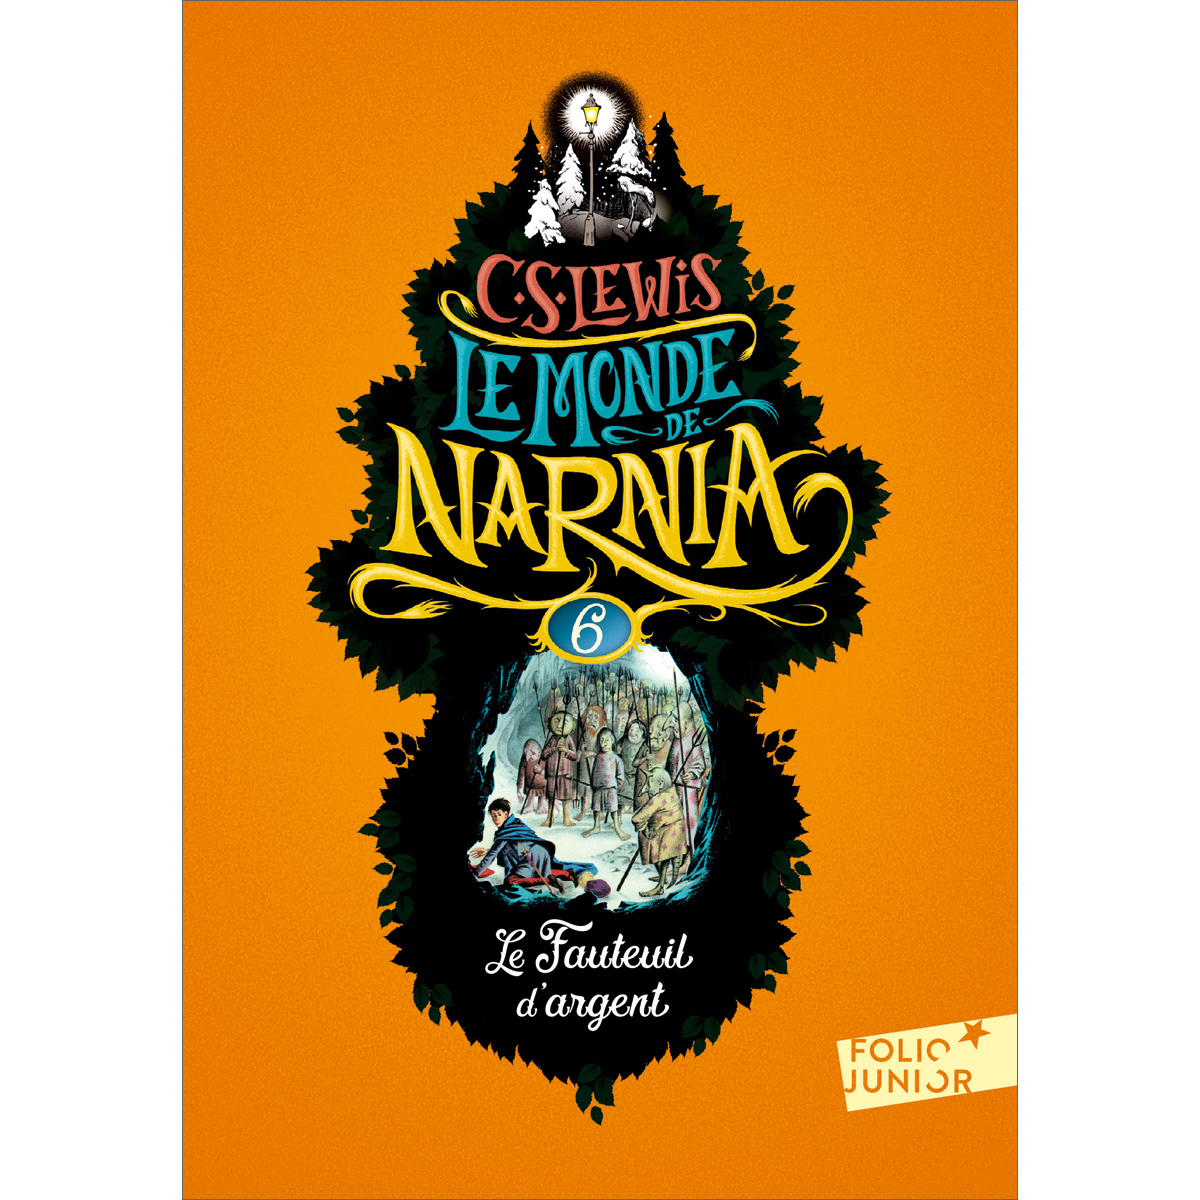 Le Monde de Narnia (6) - Le Fauteuil d'argent